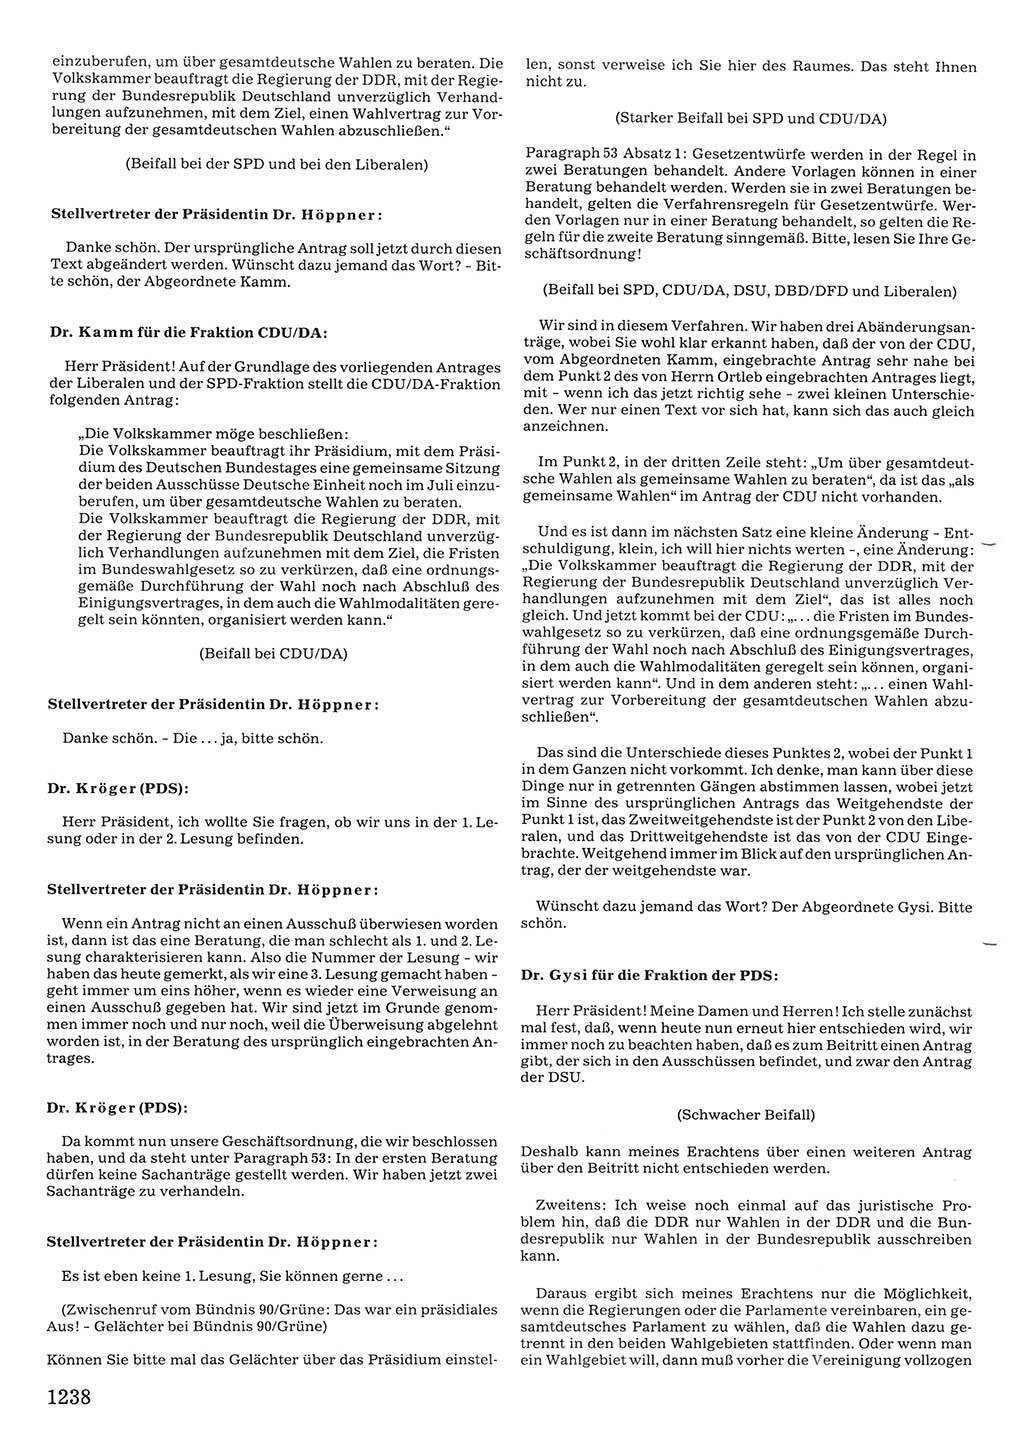 Tagungen der Volkskammer (VK) der Deutschen Demokratischen Republik (DDR), 10. Wahlperiode 1990, Seite 1238 (VK. DDR 10. WP. 1990, Prot. Tg. 1-38, 5.4.-2.10.1990, S. 1238)